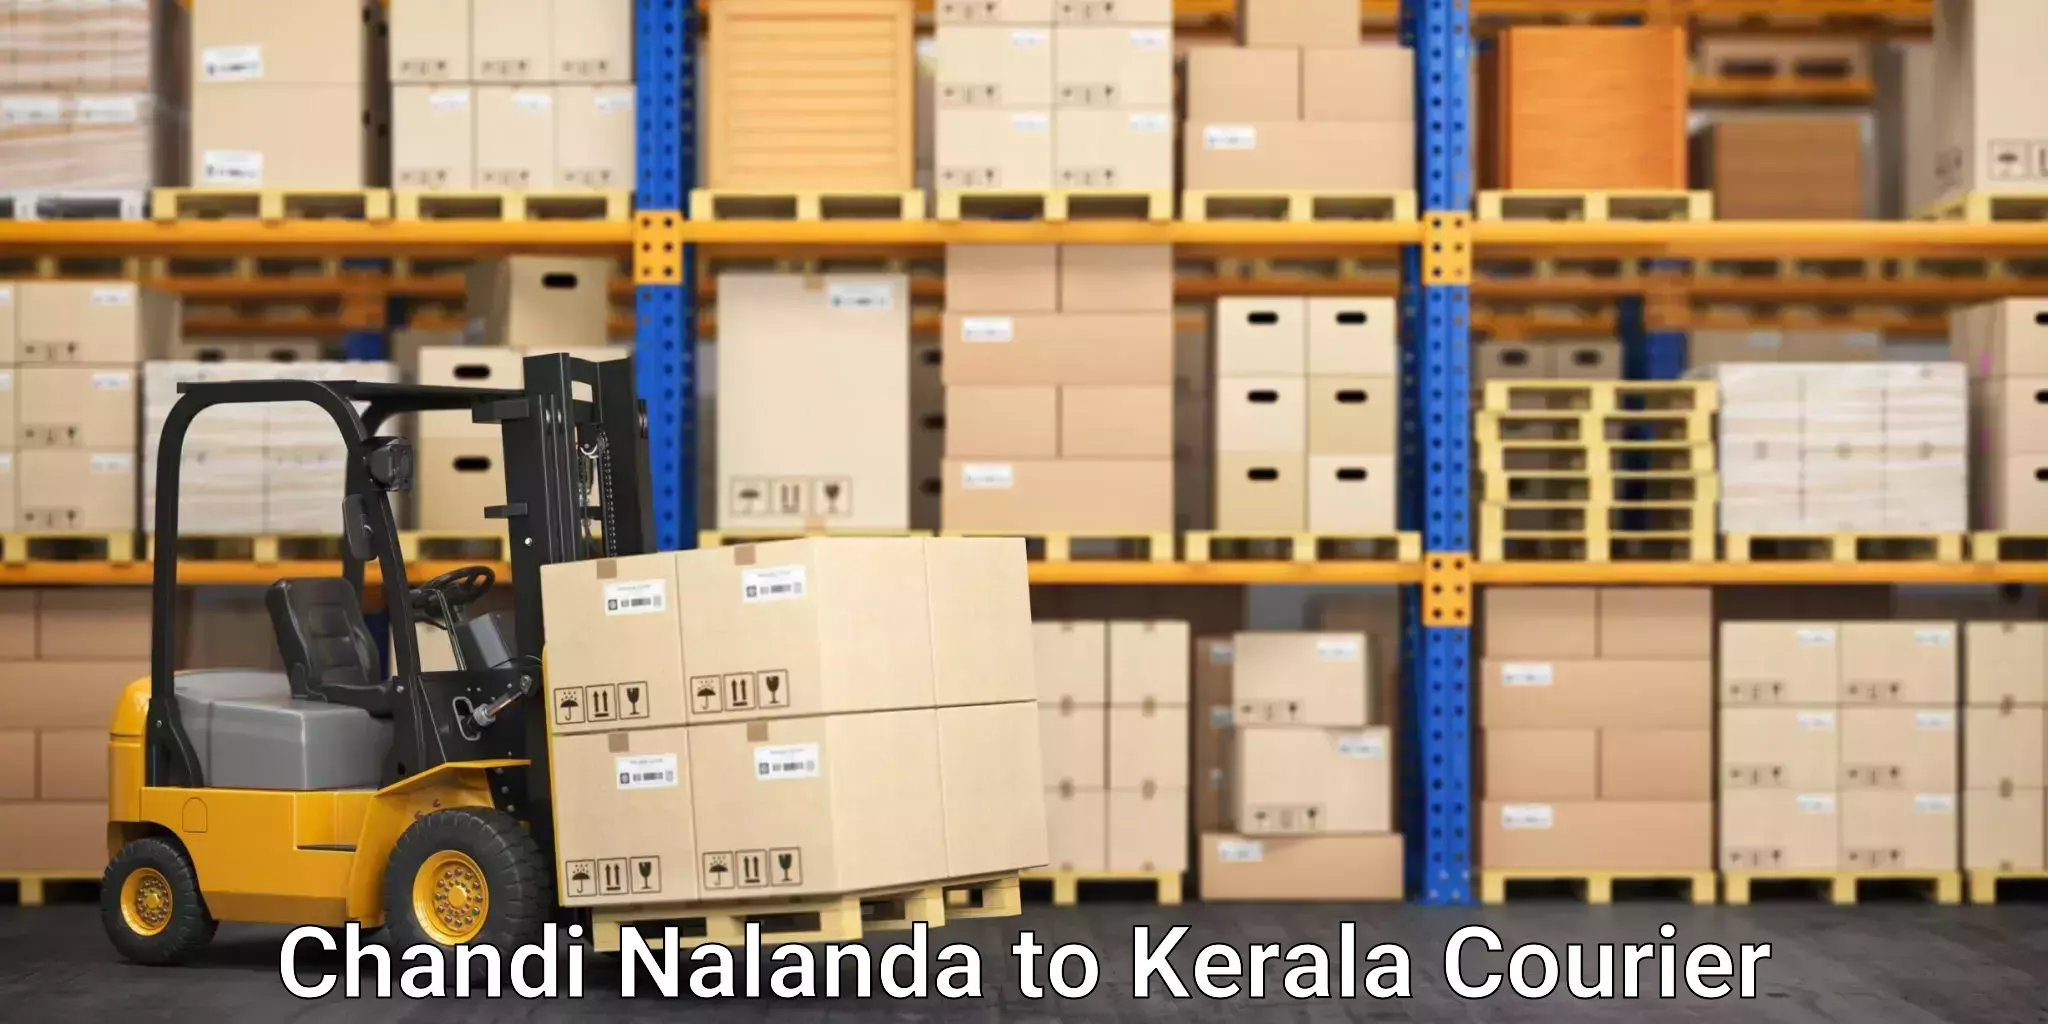 Professional movers Chandi Nalanda to Cochin University of Science and Technology